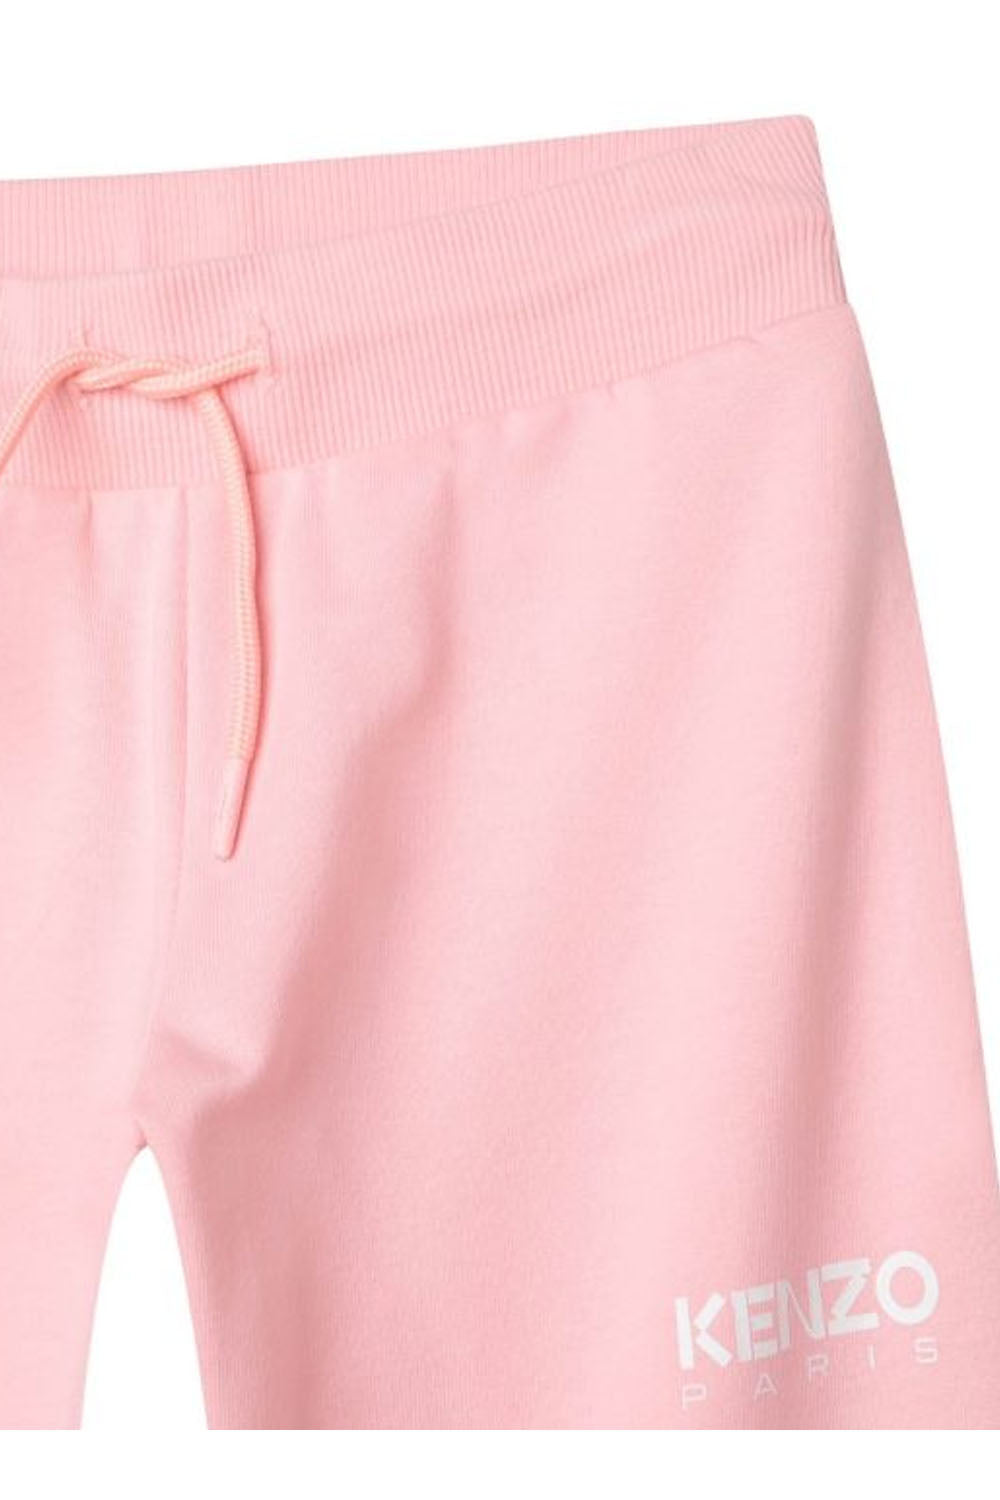 Side Pocket Fleece Track Pants for Girls Side Pocket Fleece Track Pants for Girls Maison7